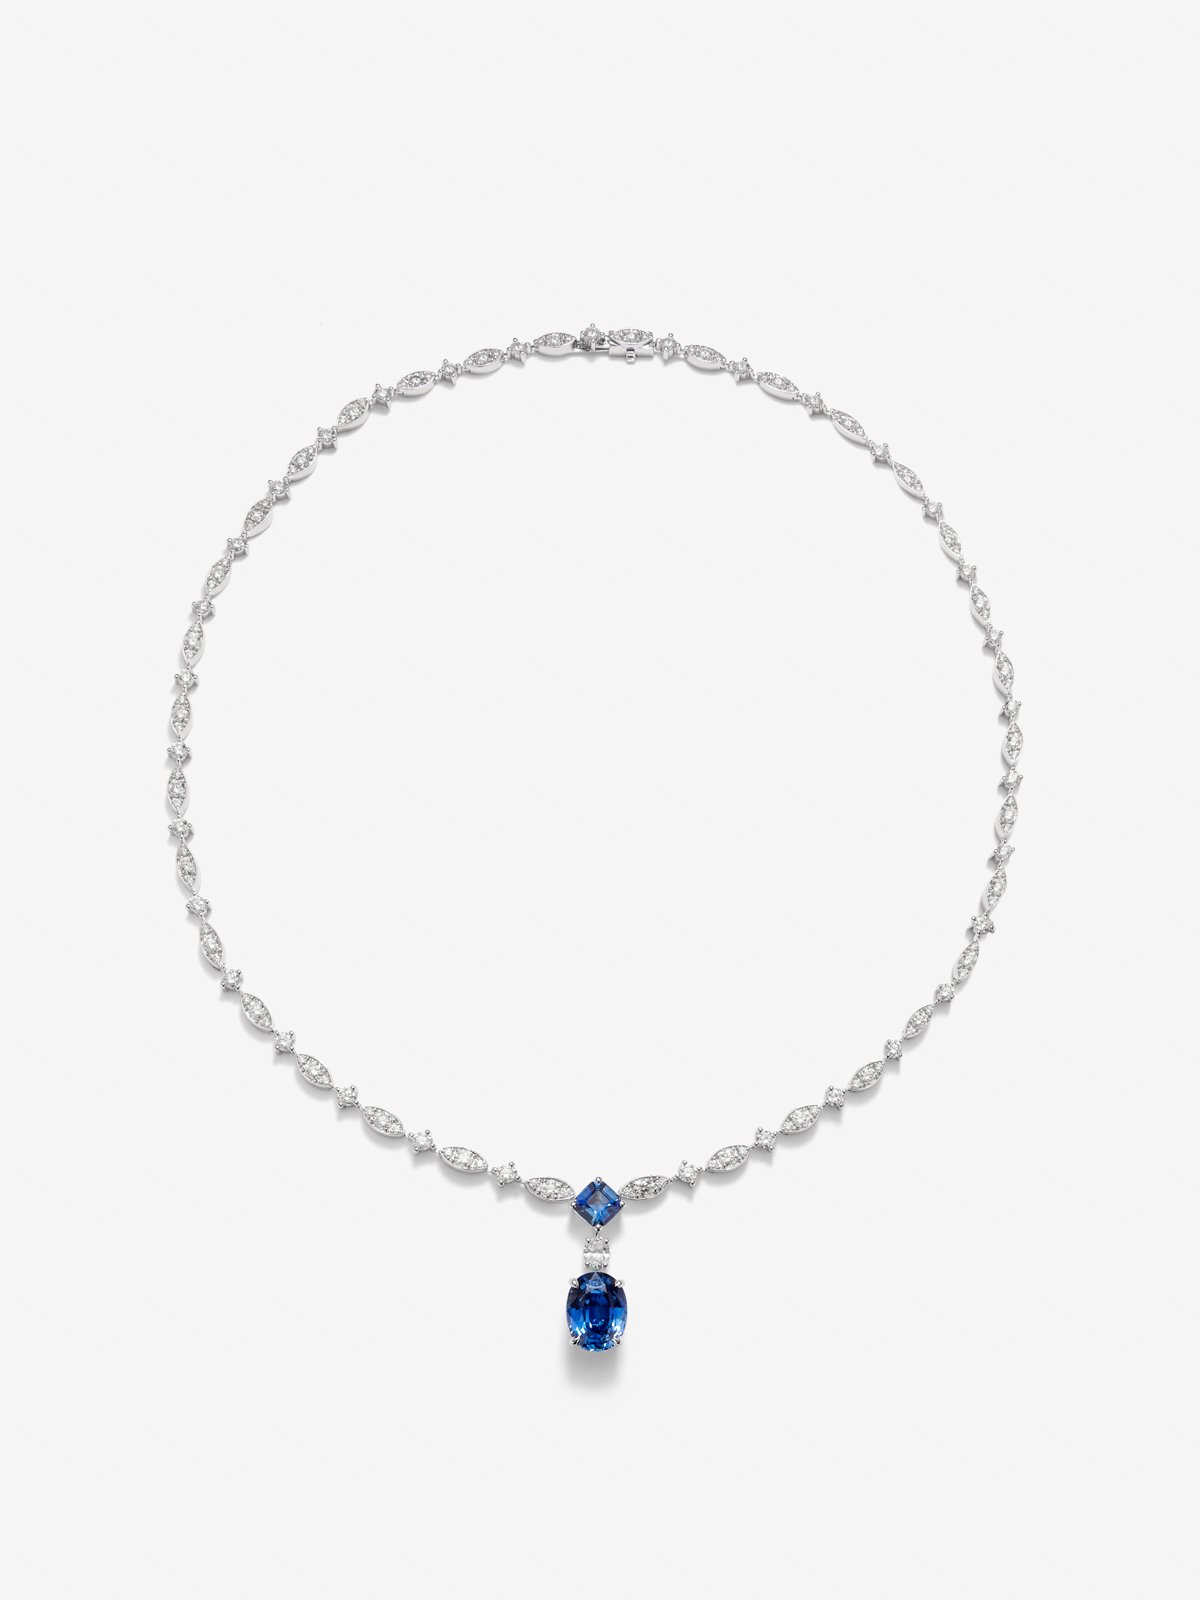 Collar de oro blanco de 18K con zafiro azul royal en talla oval de 5,05 cts, zafiros azules en talla octogonal 1,04 cts y diamantes blancos en talla brillante de 7,59 cts